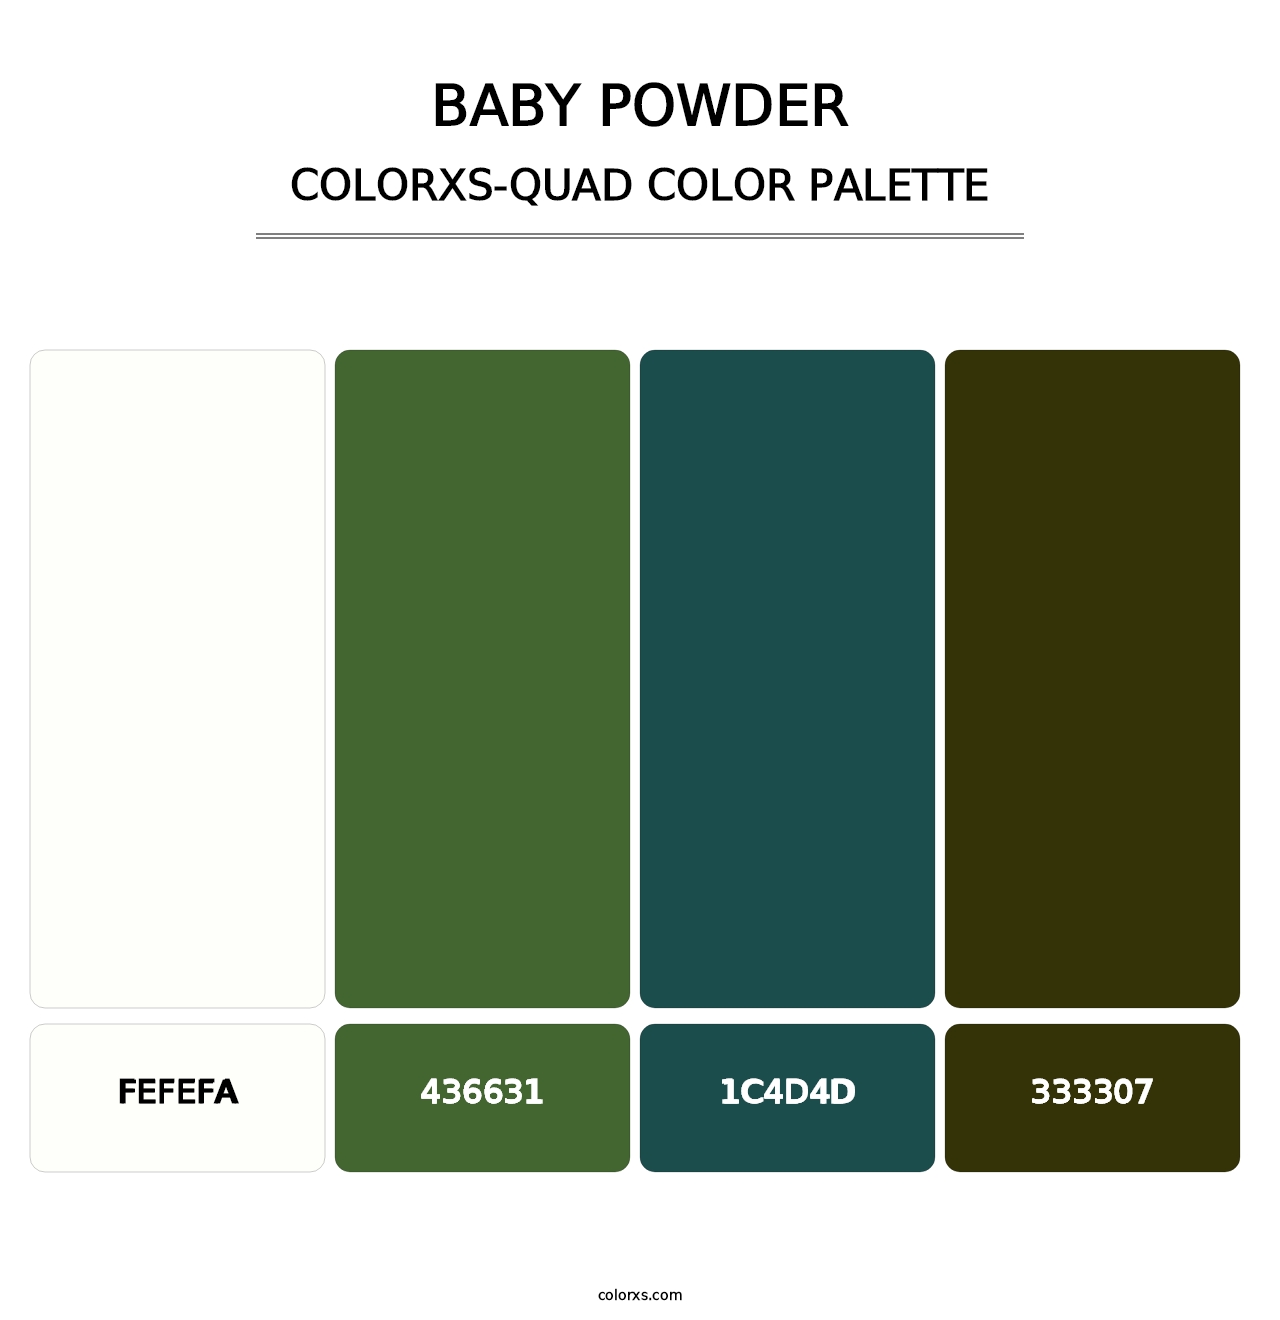 Baby Powder - Colorxs Quad Palette